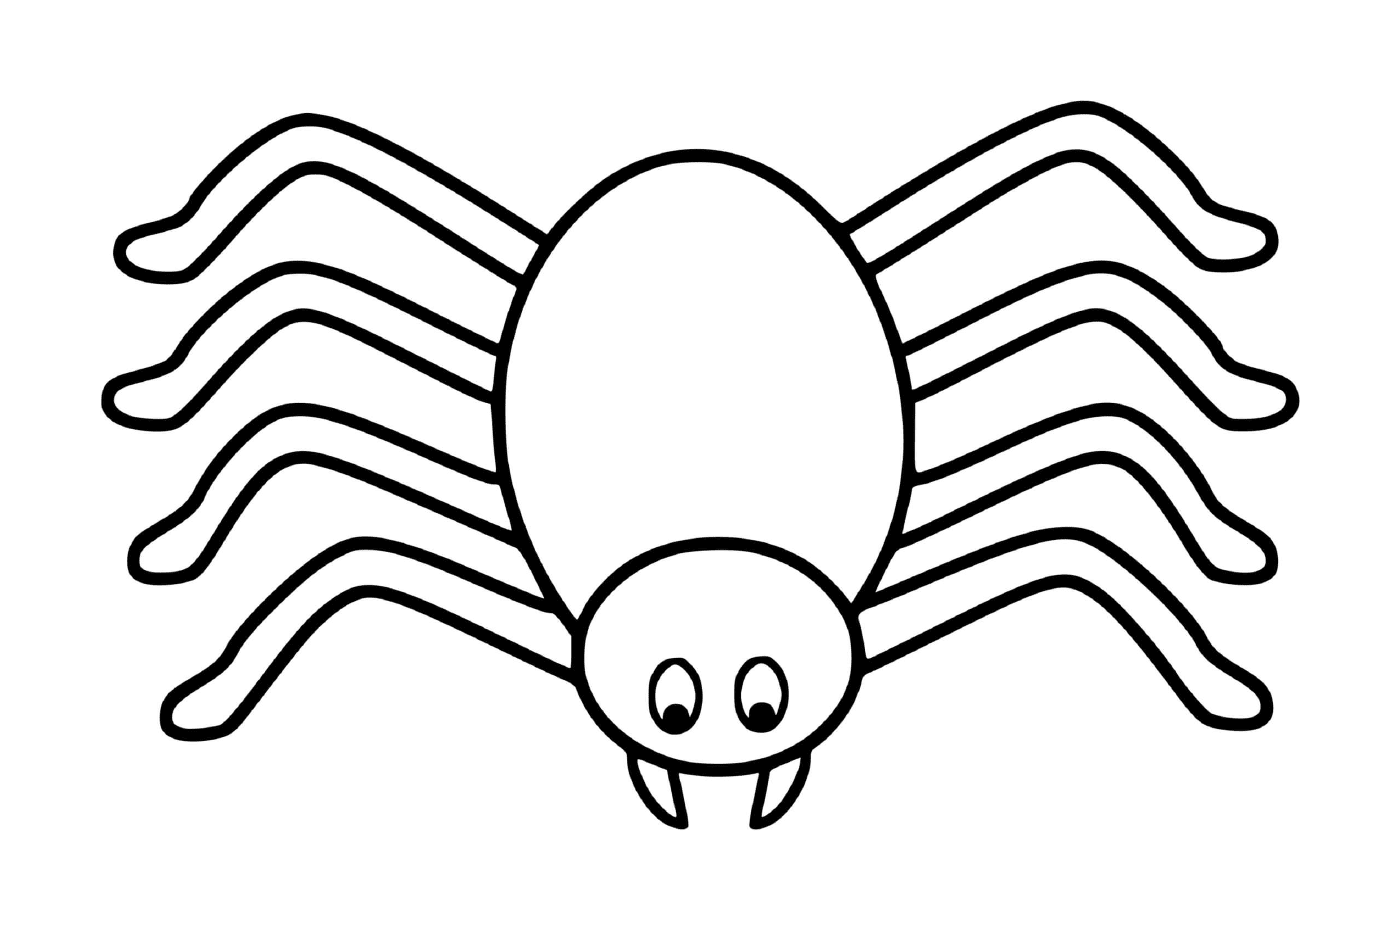  Eine einfache und einfache Spinne 